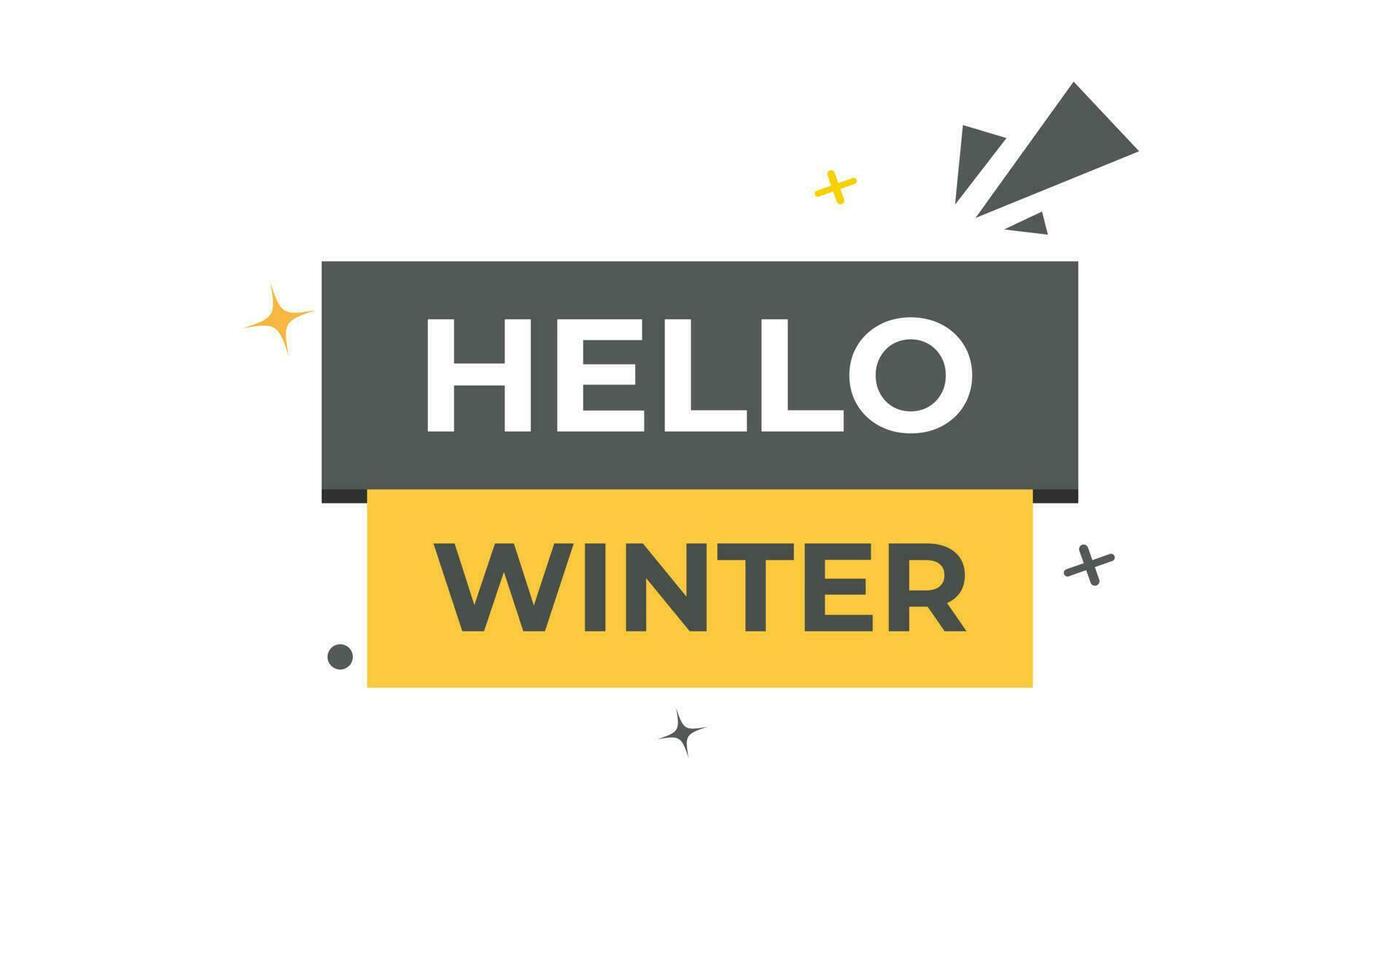 Hallo Winter Taste. Rede Blase, Banner Etikette Hallo Winter vektor